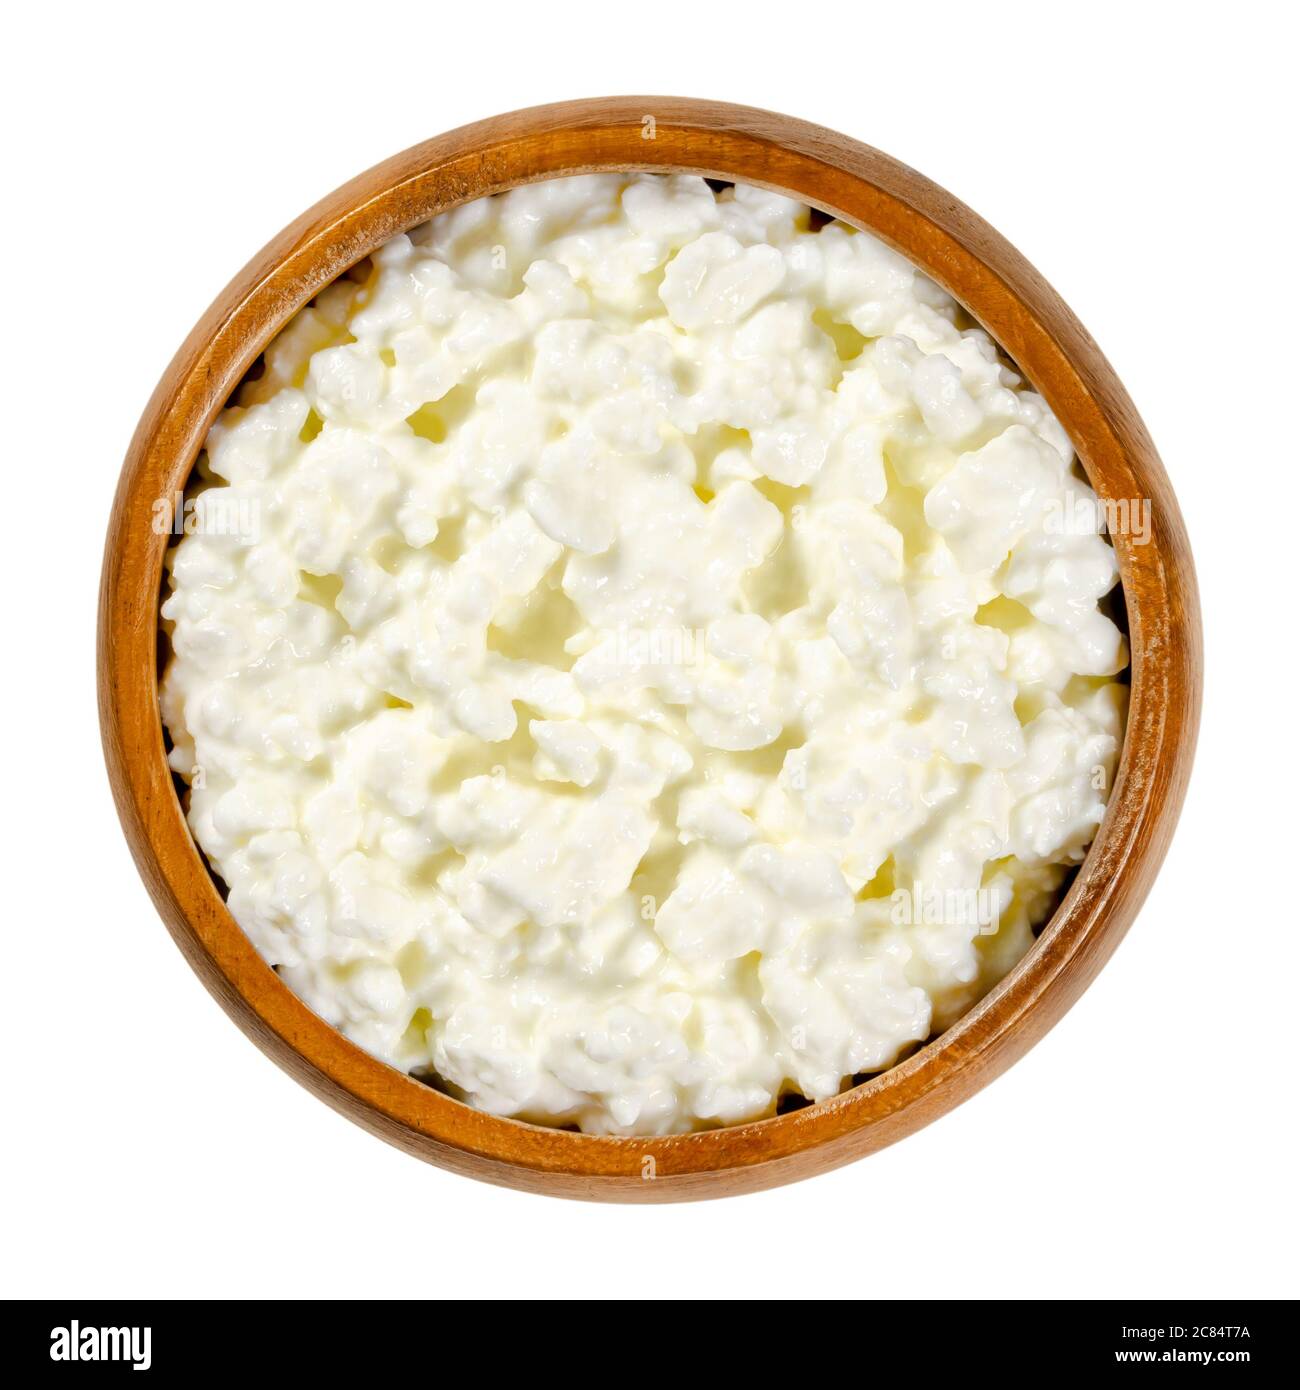 Ricotta il formaggio in una ciotola di legno. Prodotto fresco di cagliata  di formaggio noto anche come caglidi e siero di latte, dal sapore delicato.  Ai grani di cagliata viene aggiunta una